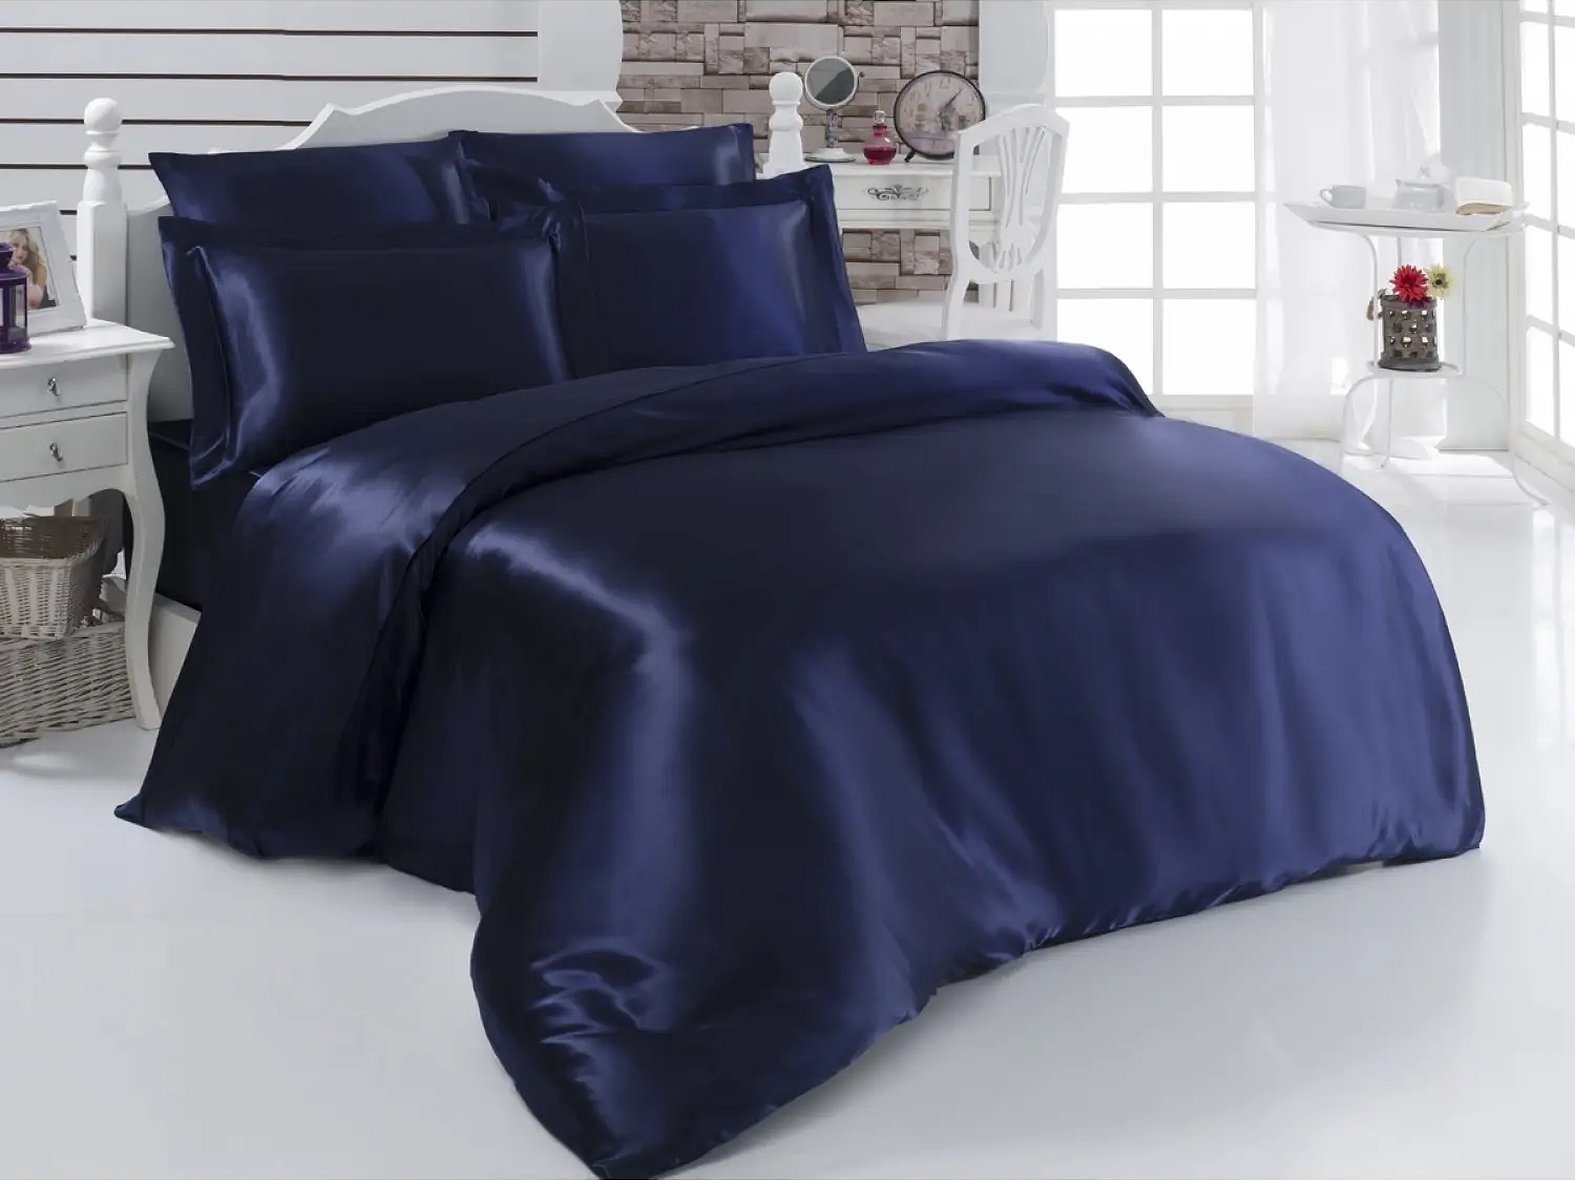 Однотонное постельное белье синего цвета